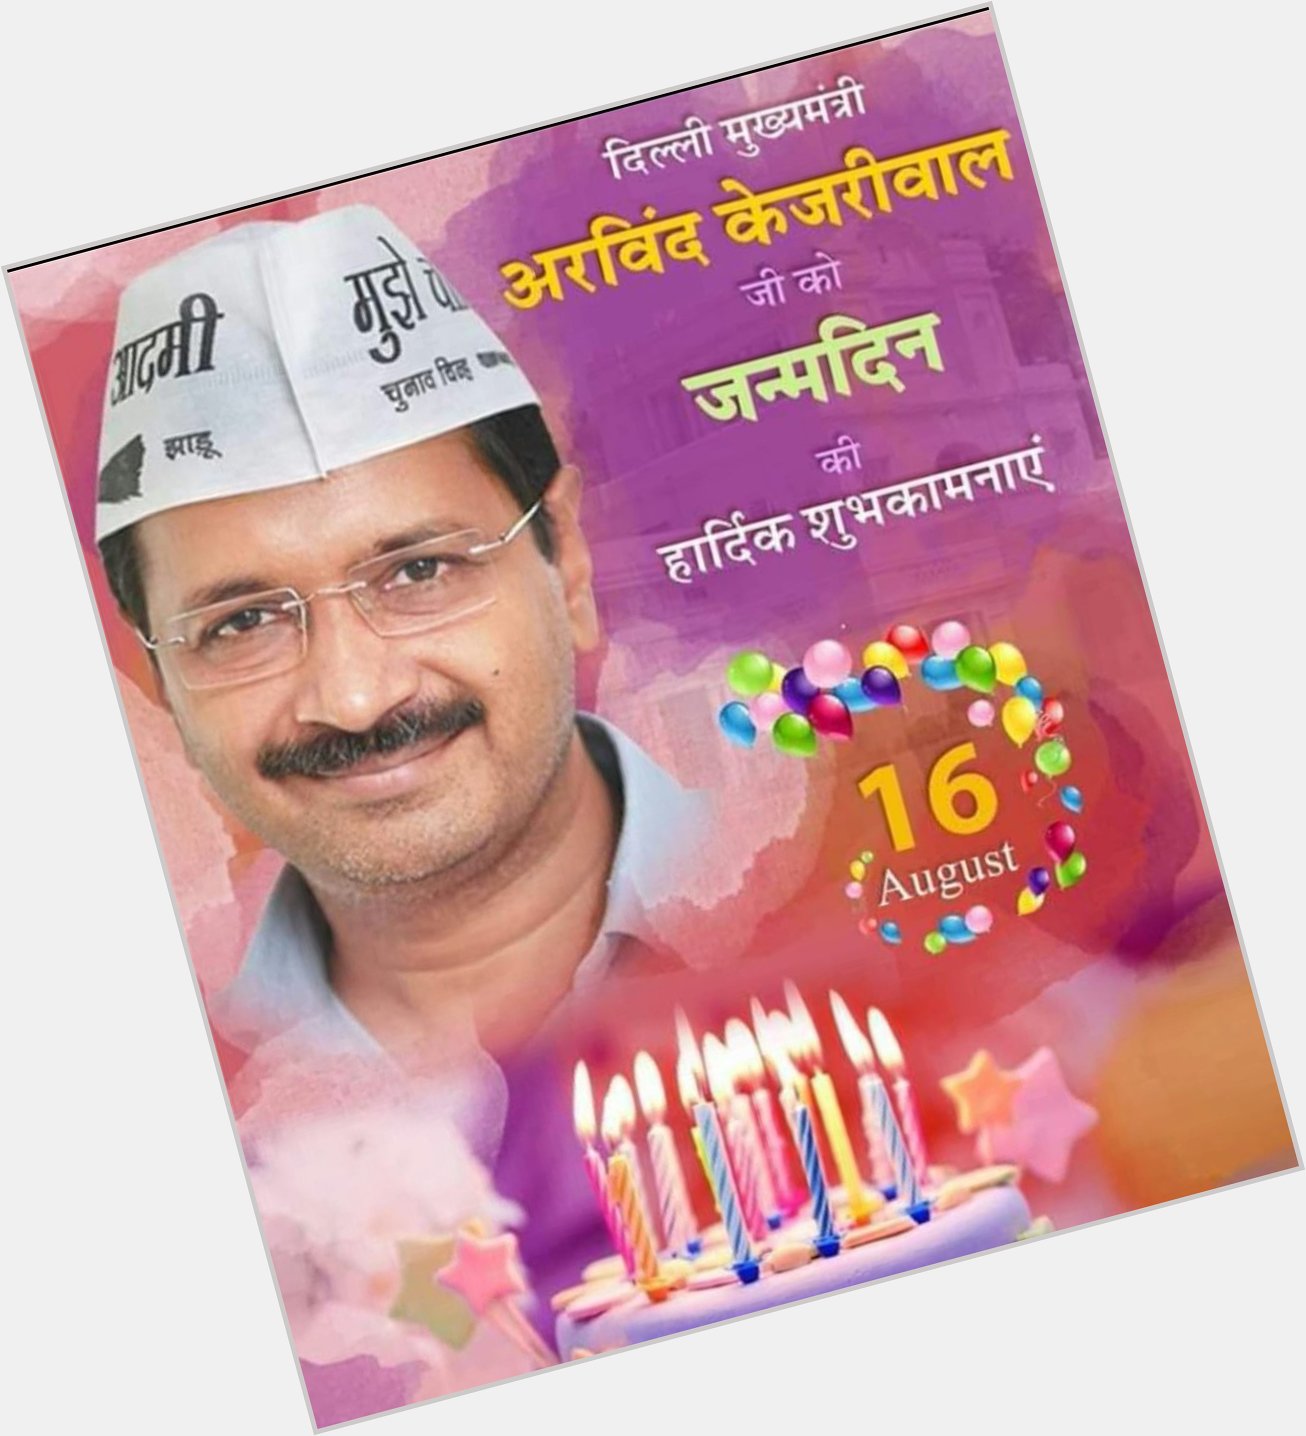 Delhi ke CM Shree Arvind kejriwal ji ko janamdivas ki bhaut bhaut bhadhayi.
Happy birthday AK 